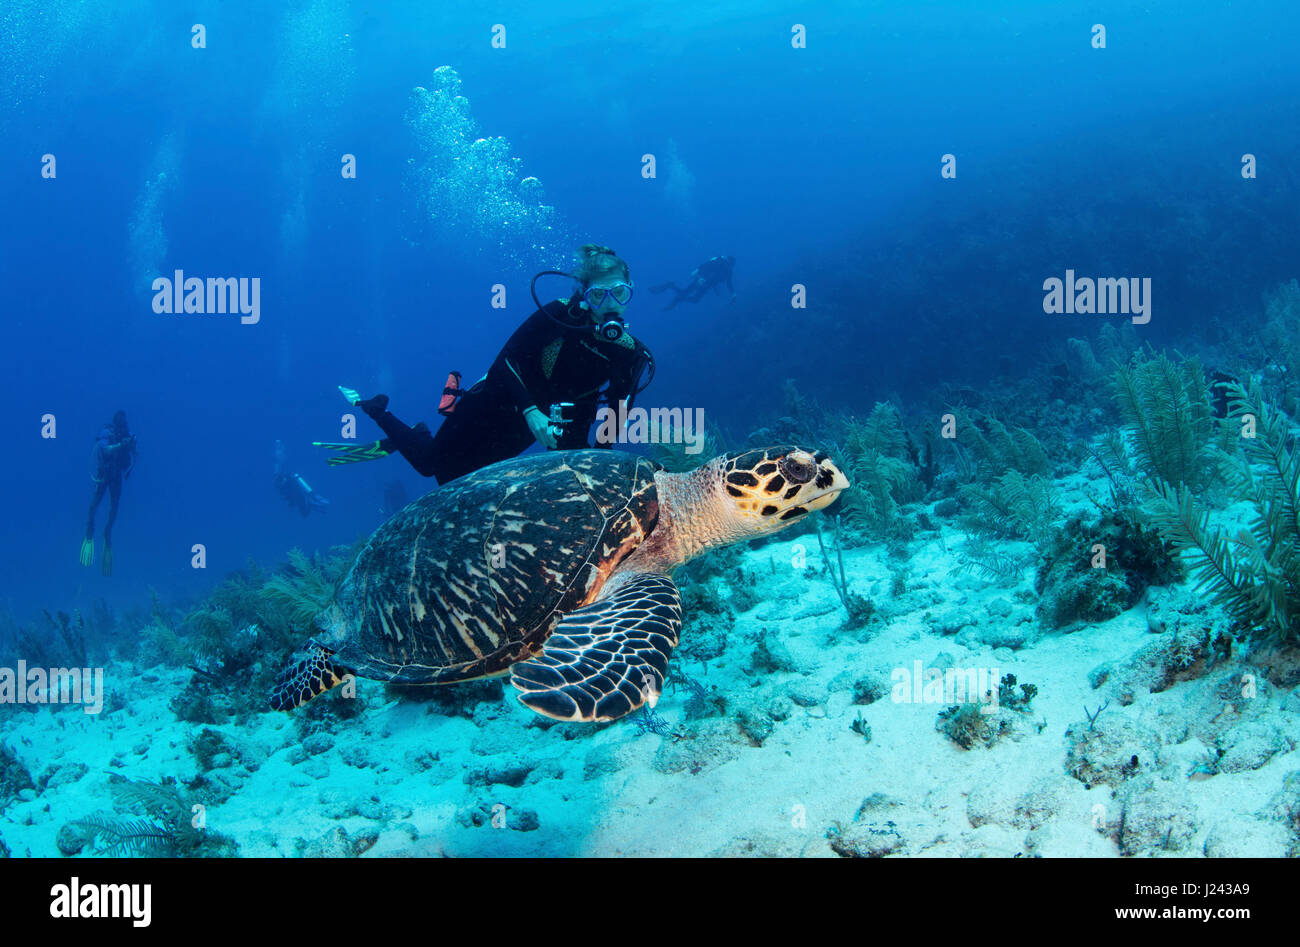 La tortue imbriquée avec scuba diver Banque D'Images